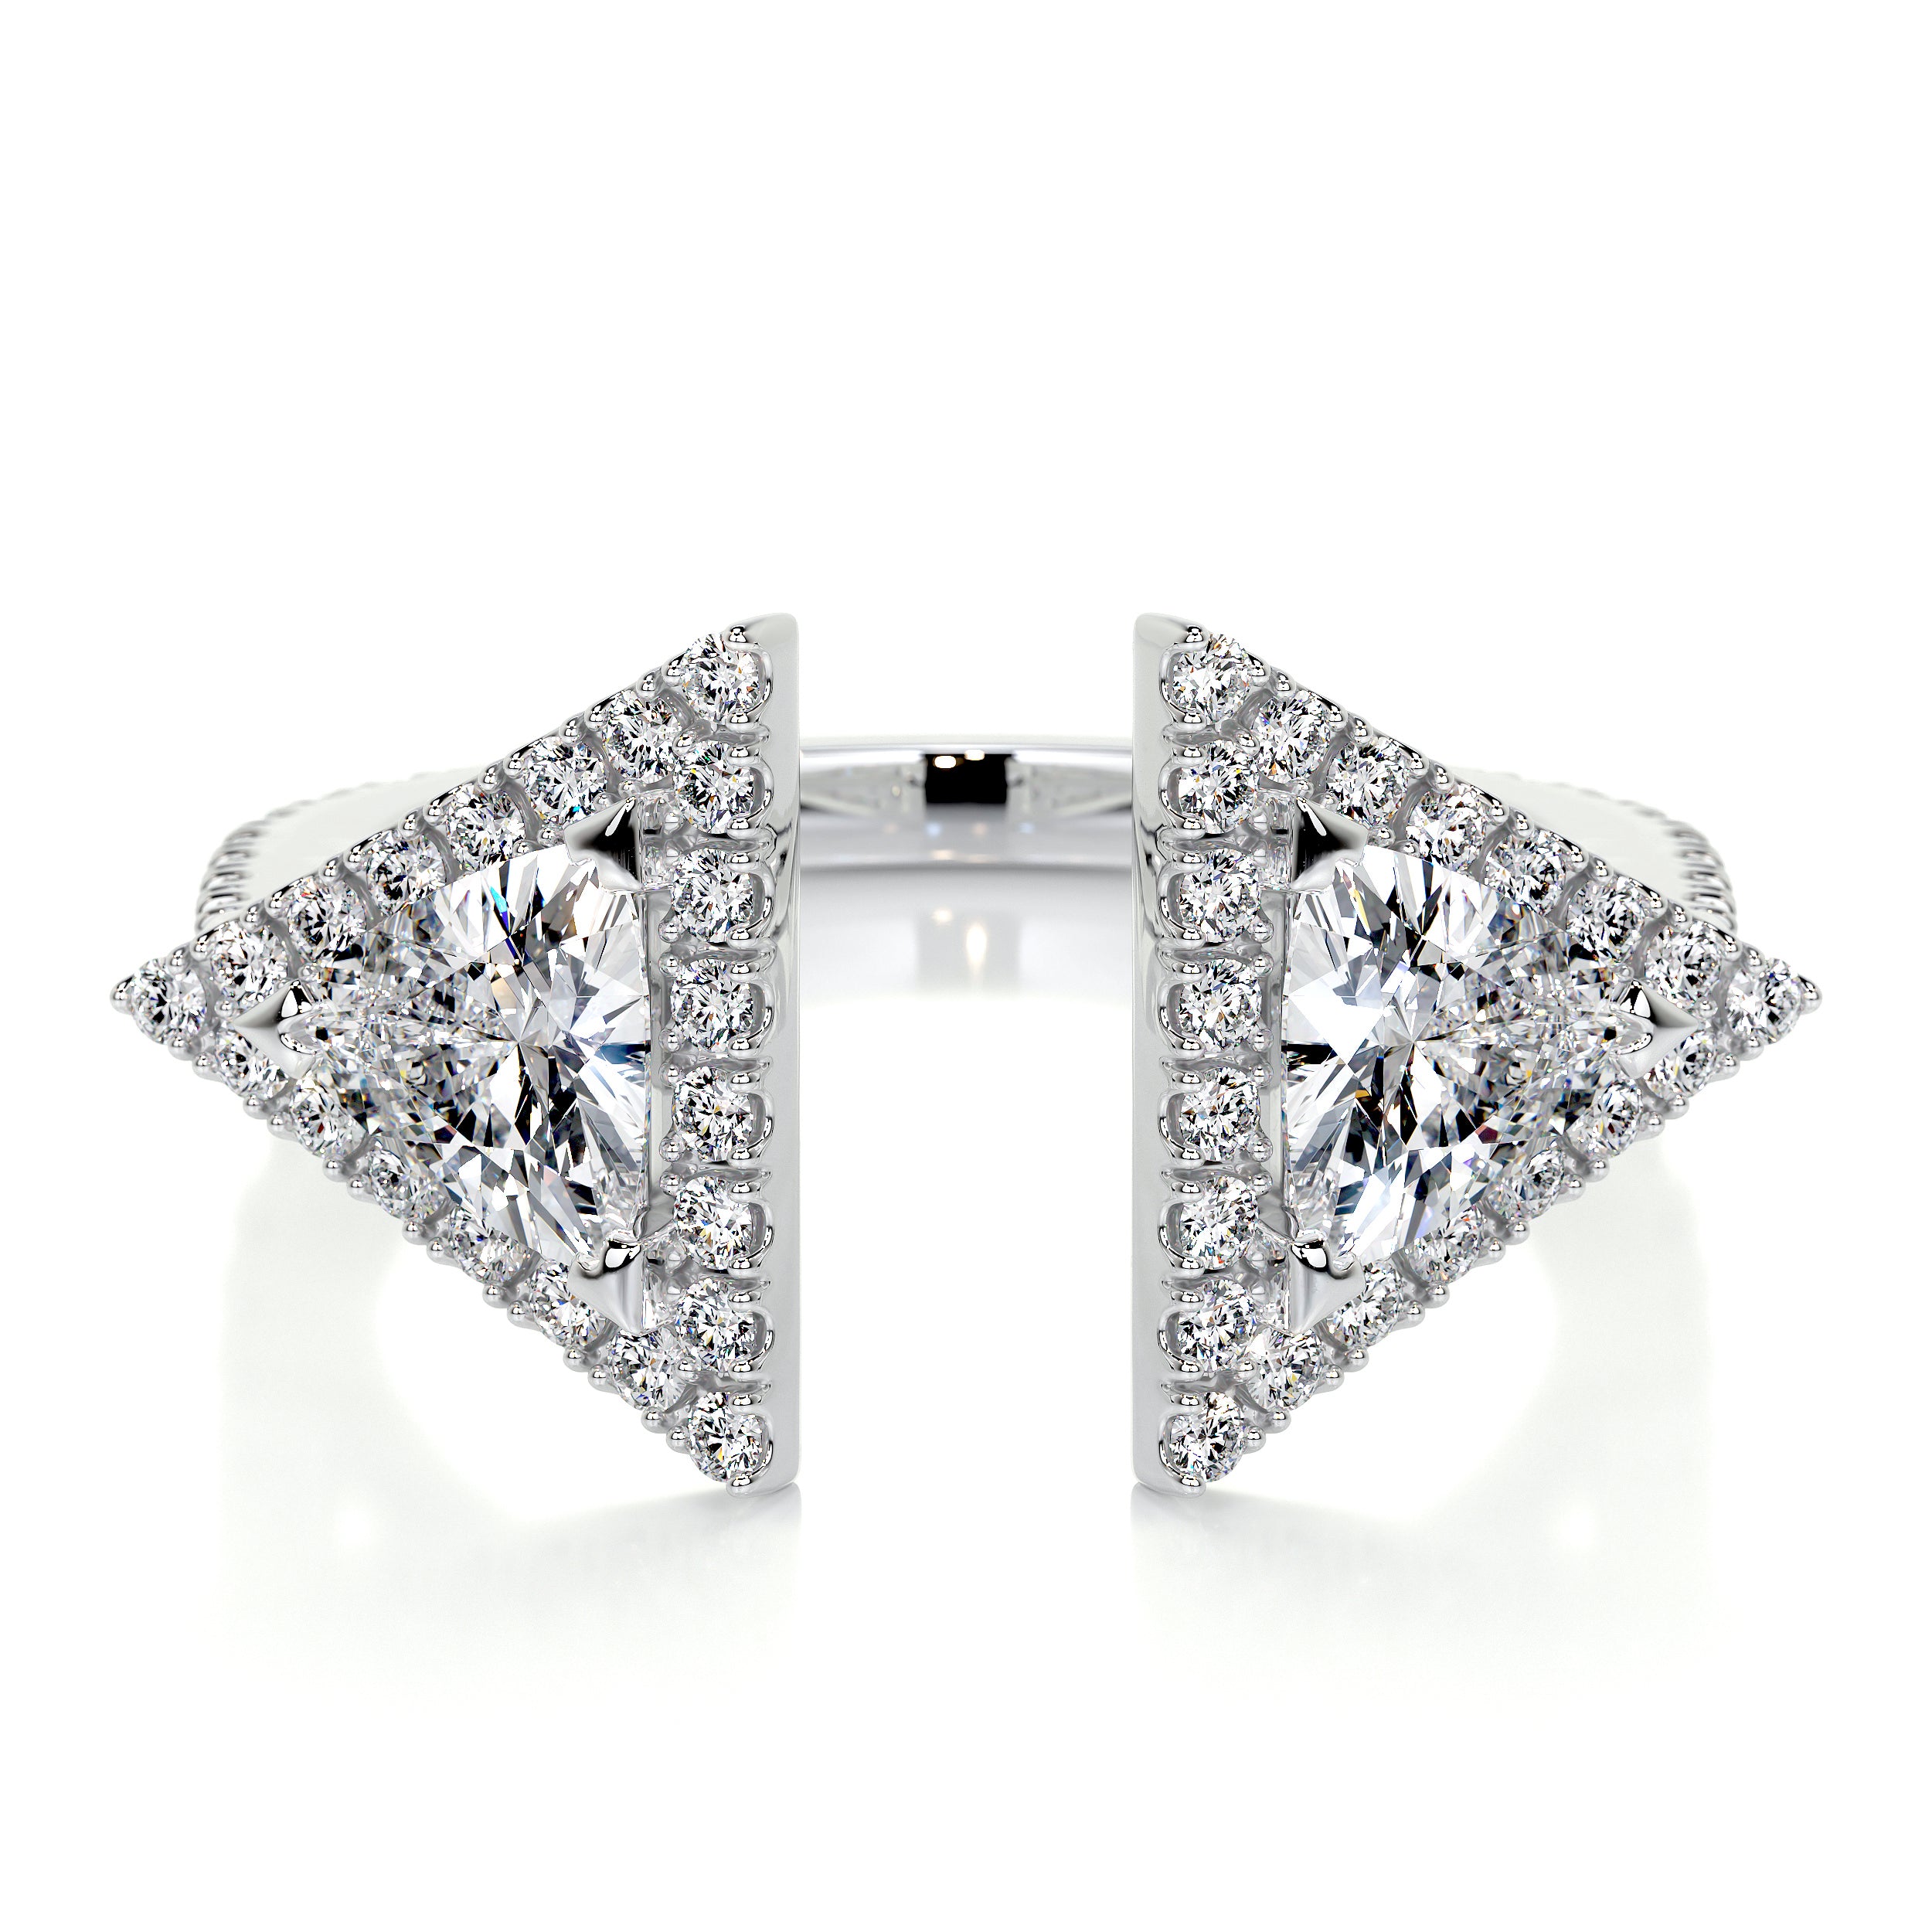 Olivia Lab Grown Diamond Wedding Ring   (1 carat) -14K White Gold